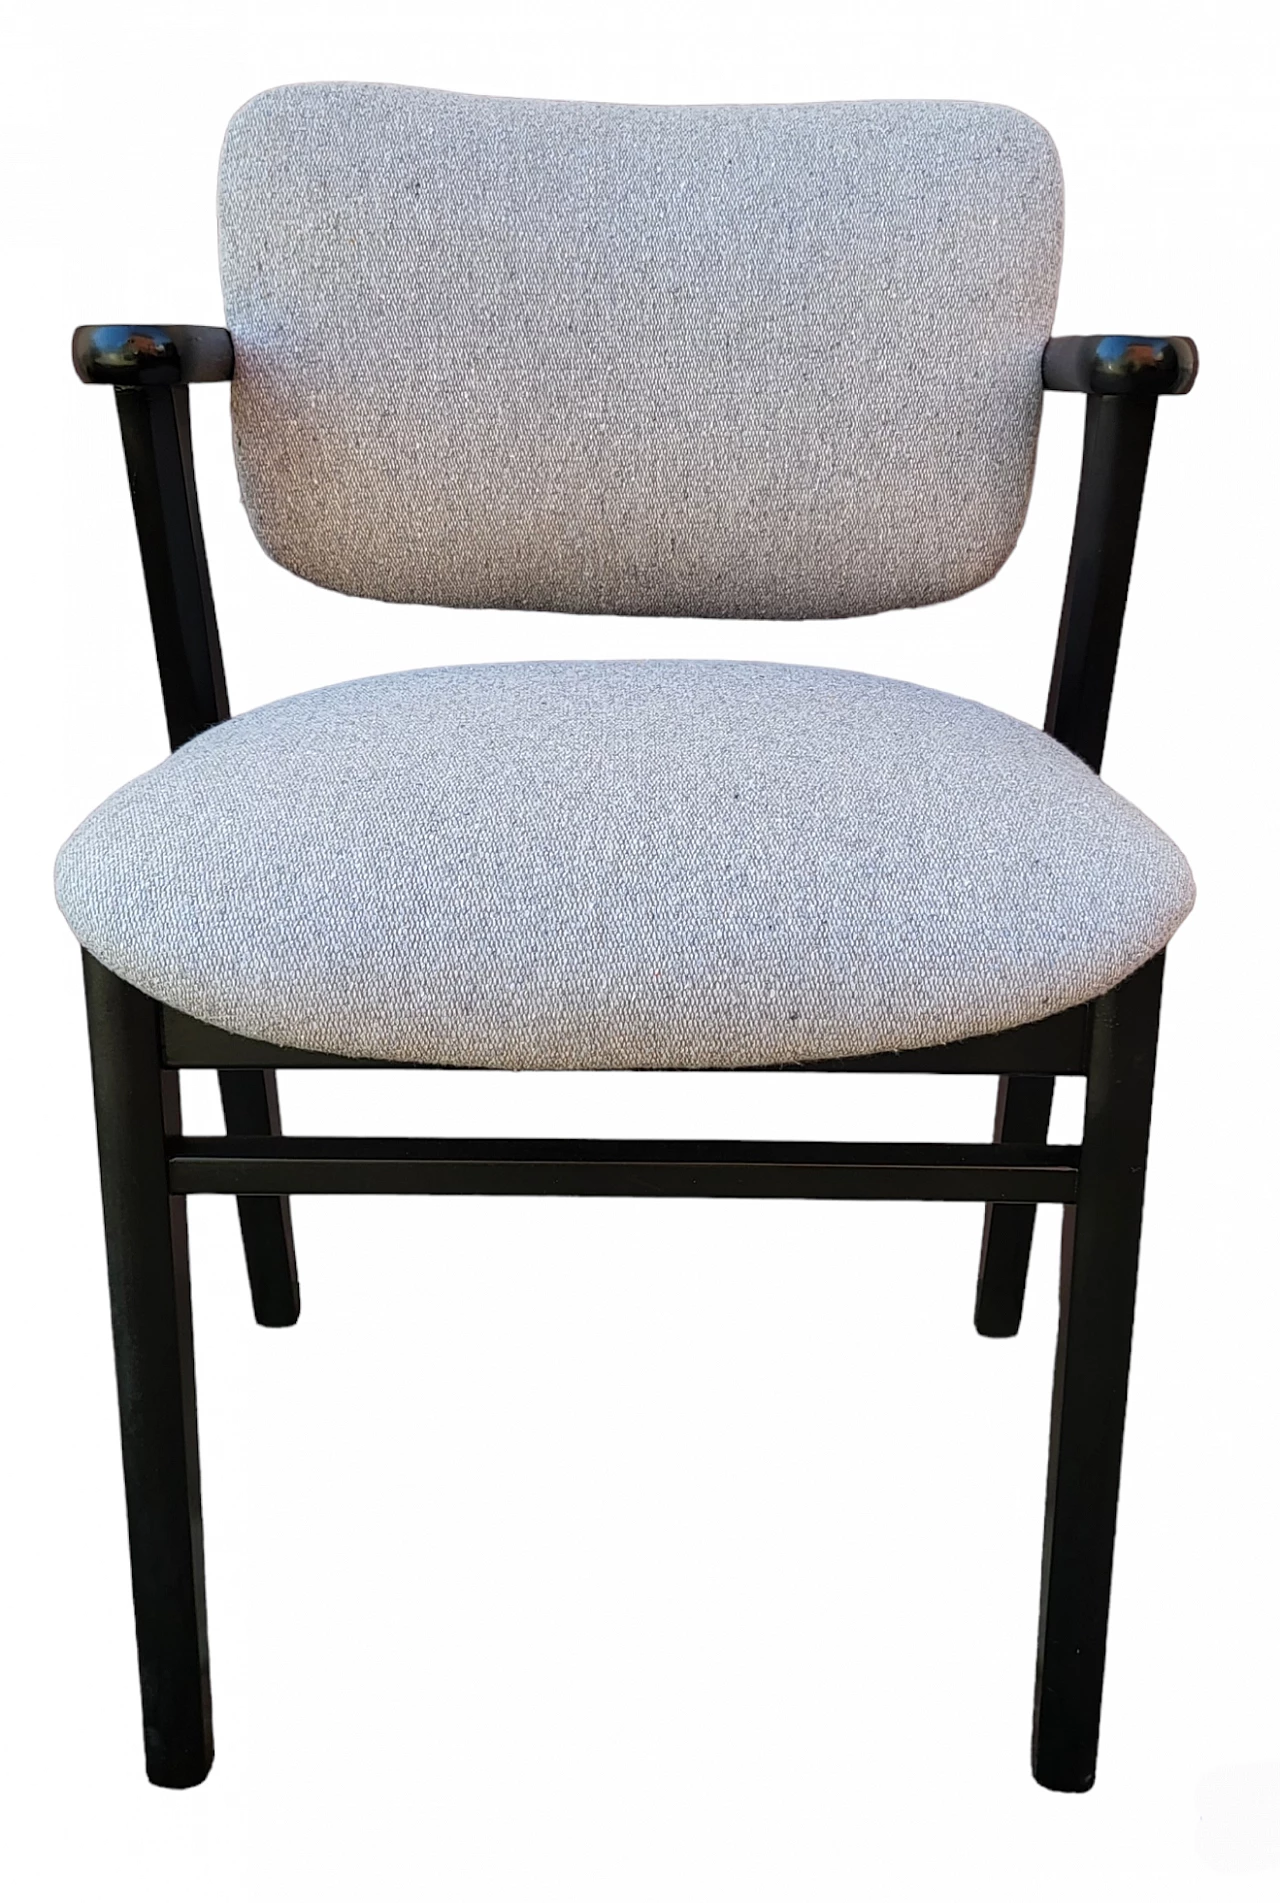 4 Domus chairs by Ilmari Tapiovaara for Artek, 1980s 5